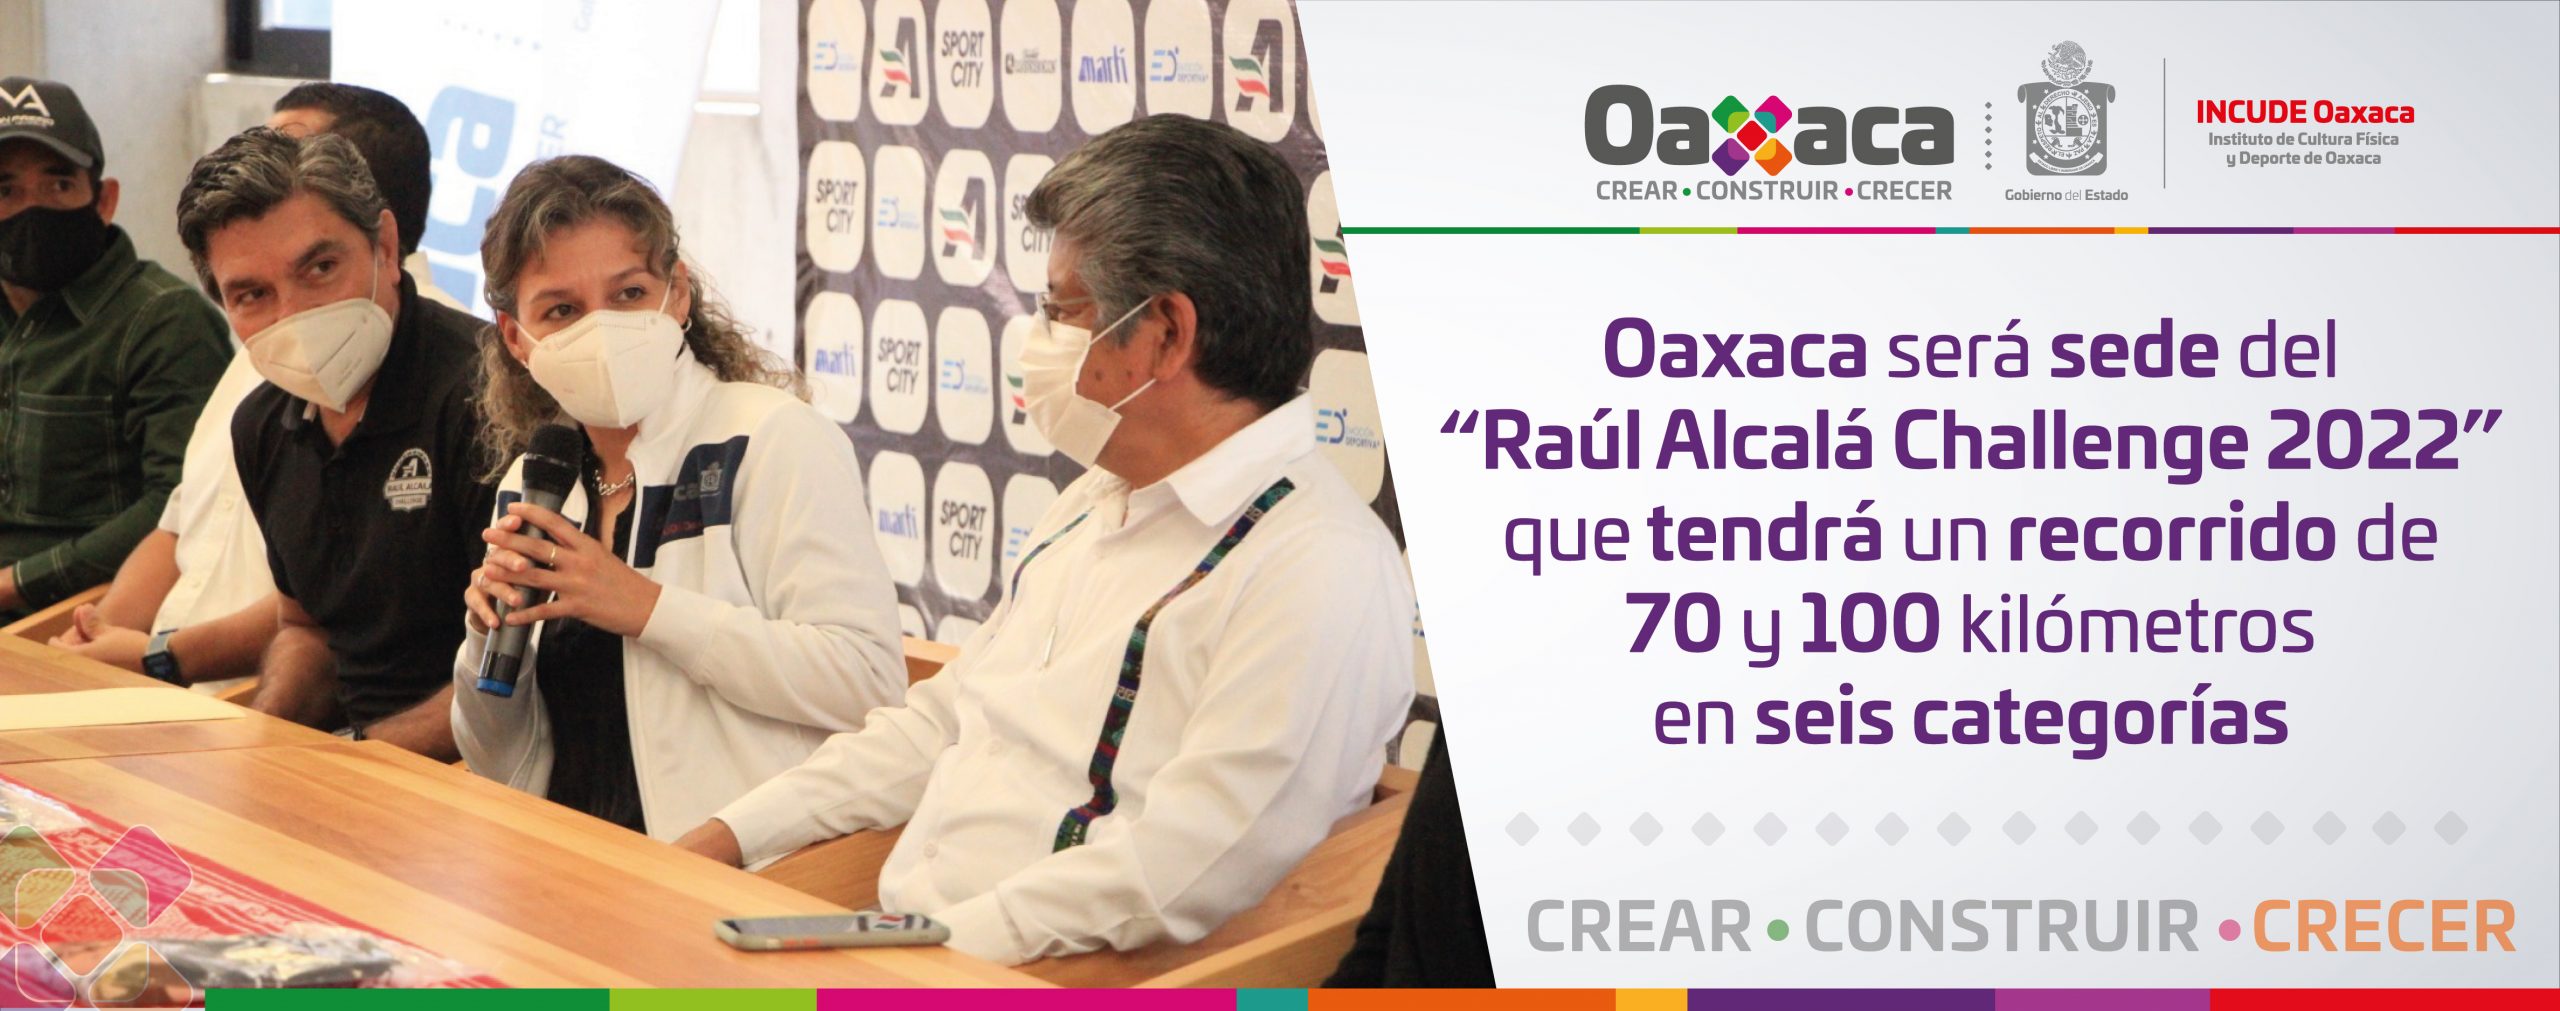 Oaxaca será sede del “Raúl Alcalá Challenge 2022” que tendrá un recorrido de 70 y 100 kilómetros en seis categorías